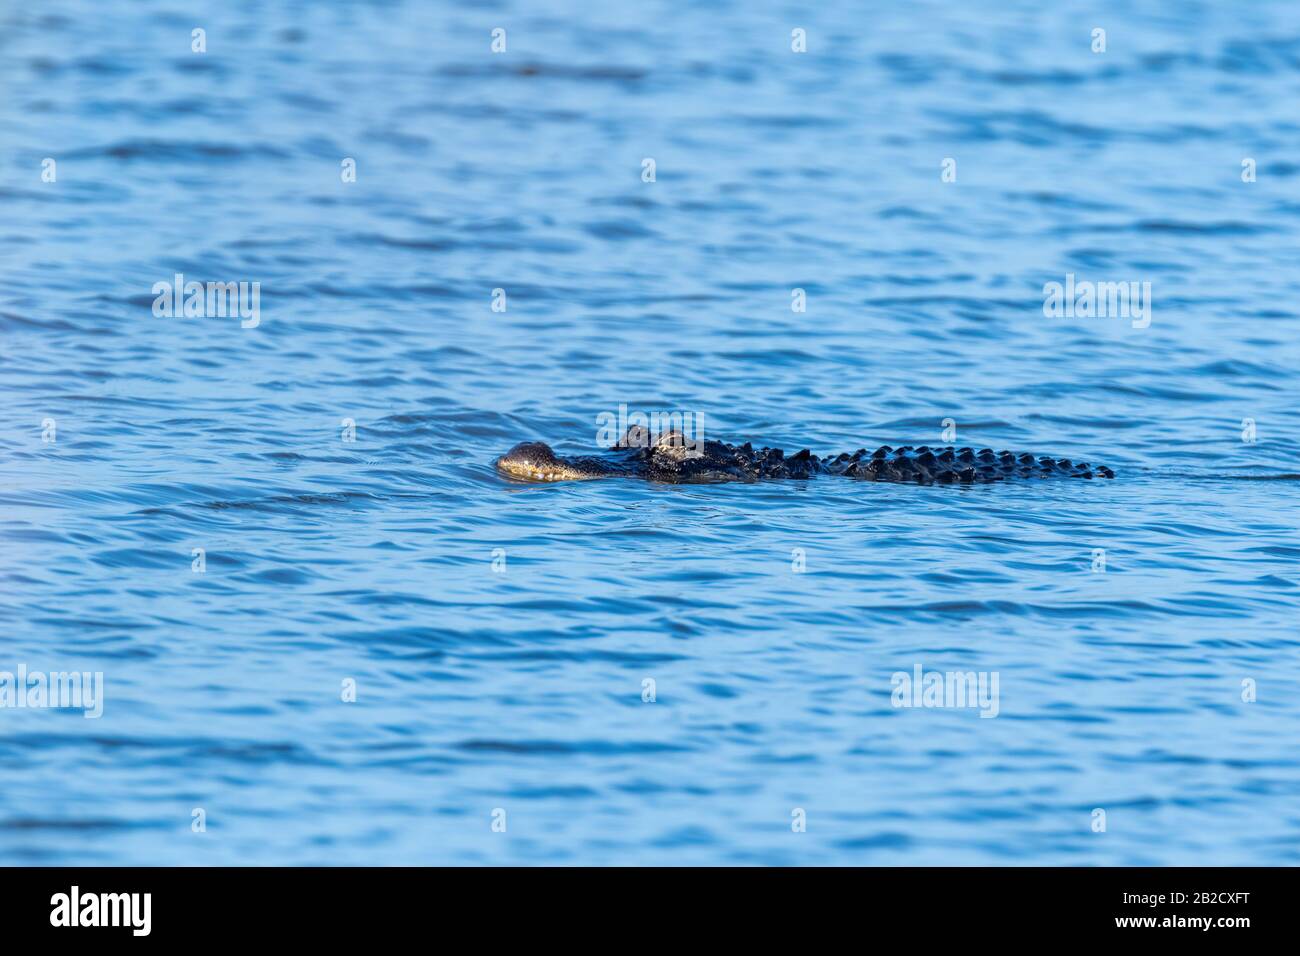 Ein amerikanischer Alligator (Alligator mississippiensis) stachelt es in den Gewässern von Merritt Island, Florida. Stockfoto